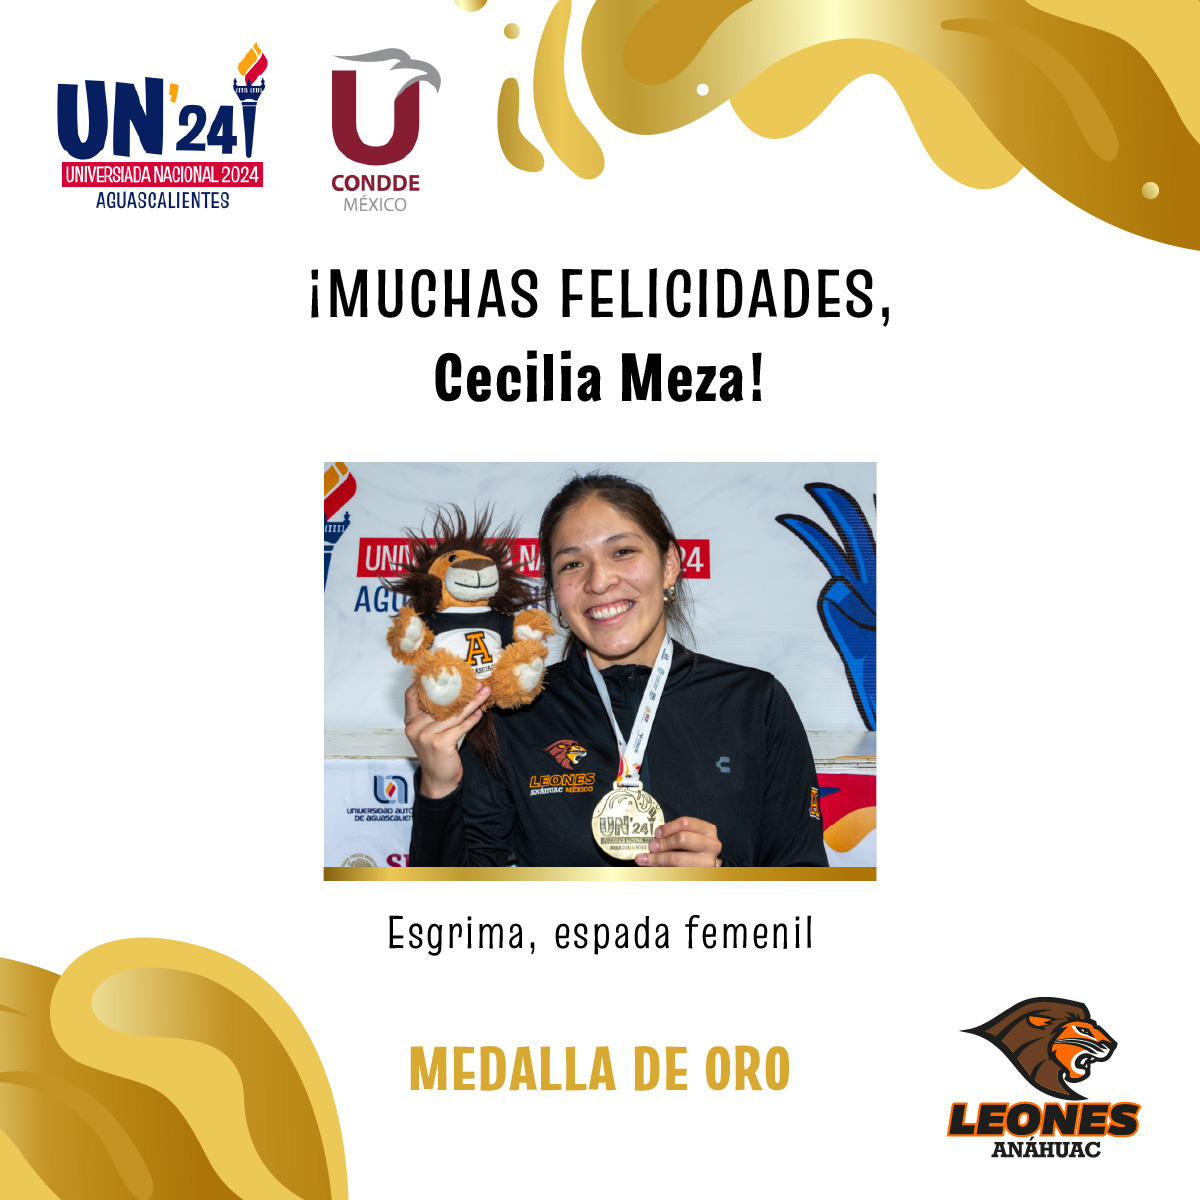 #VamosLeones ¡Felicitamos mucho a Cecilia Meza quien gracias a su esfuerzo, dedicación y disciplina logró llevarse la medalla de oro en Esgrima, espada femenil! 🥇🦁🤺 #UniversiadaNacional2024 @ConddeMx @UniversiadaMX